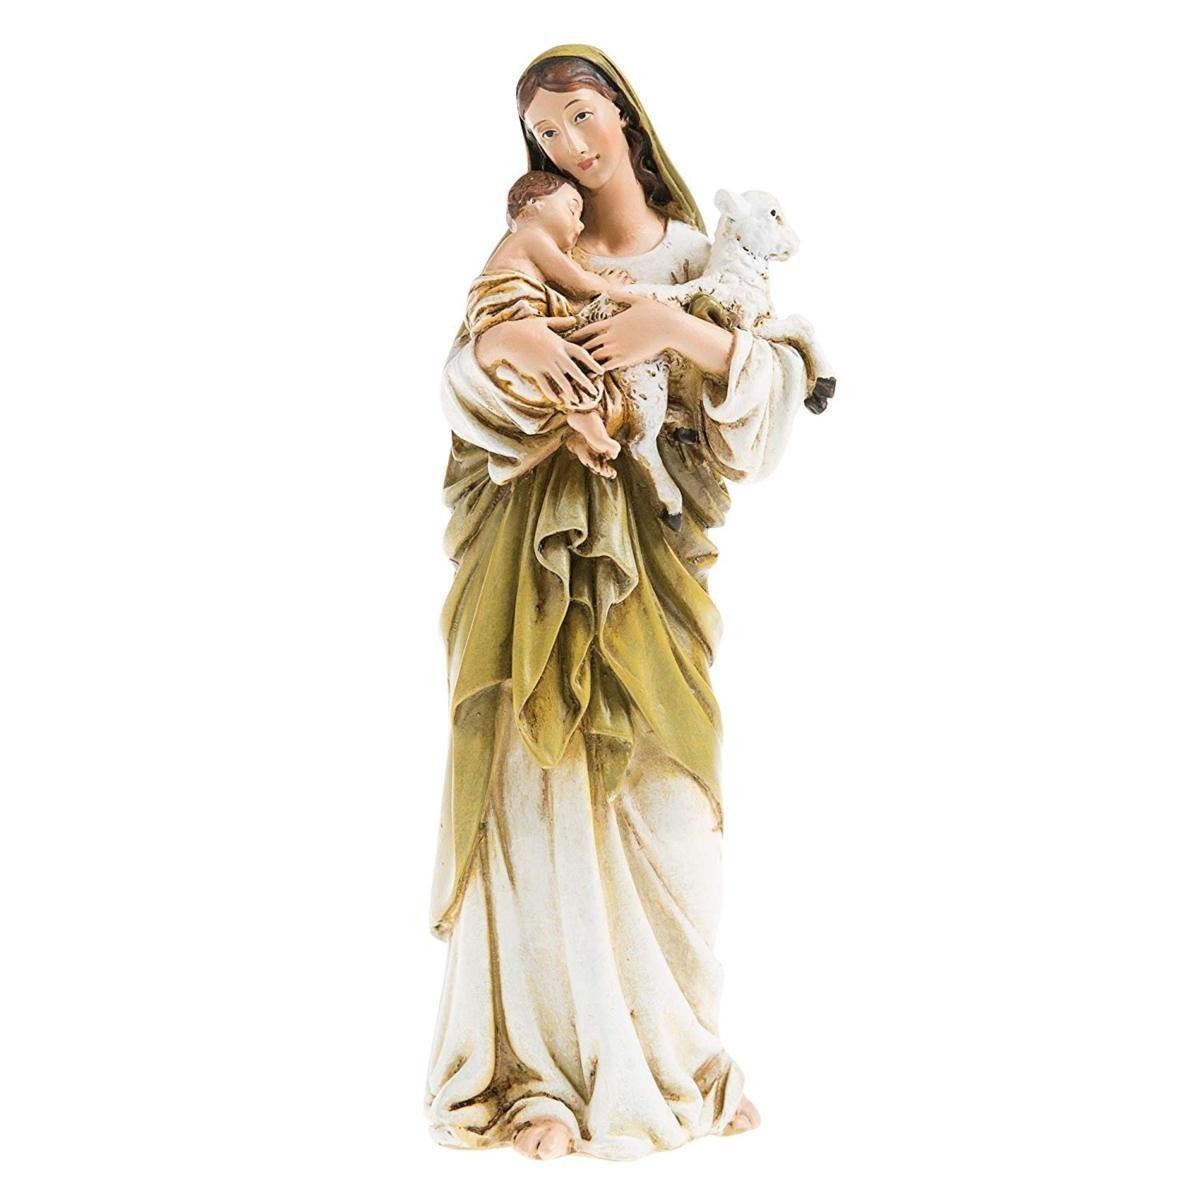 高さ約15ｃｍ 聖母マリア像 イエスと子羊を抱く聖母マリア像 キリスト教 彫像 カトリック 祭壇 プレゼント 出産祝い 美術品（輸入品